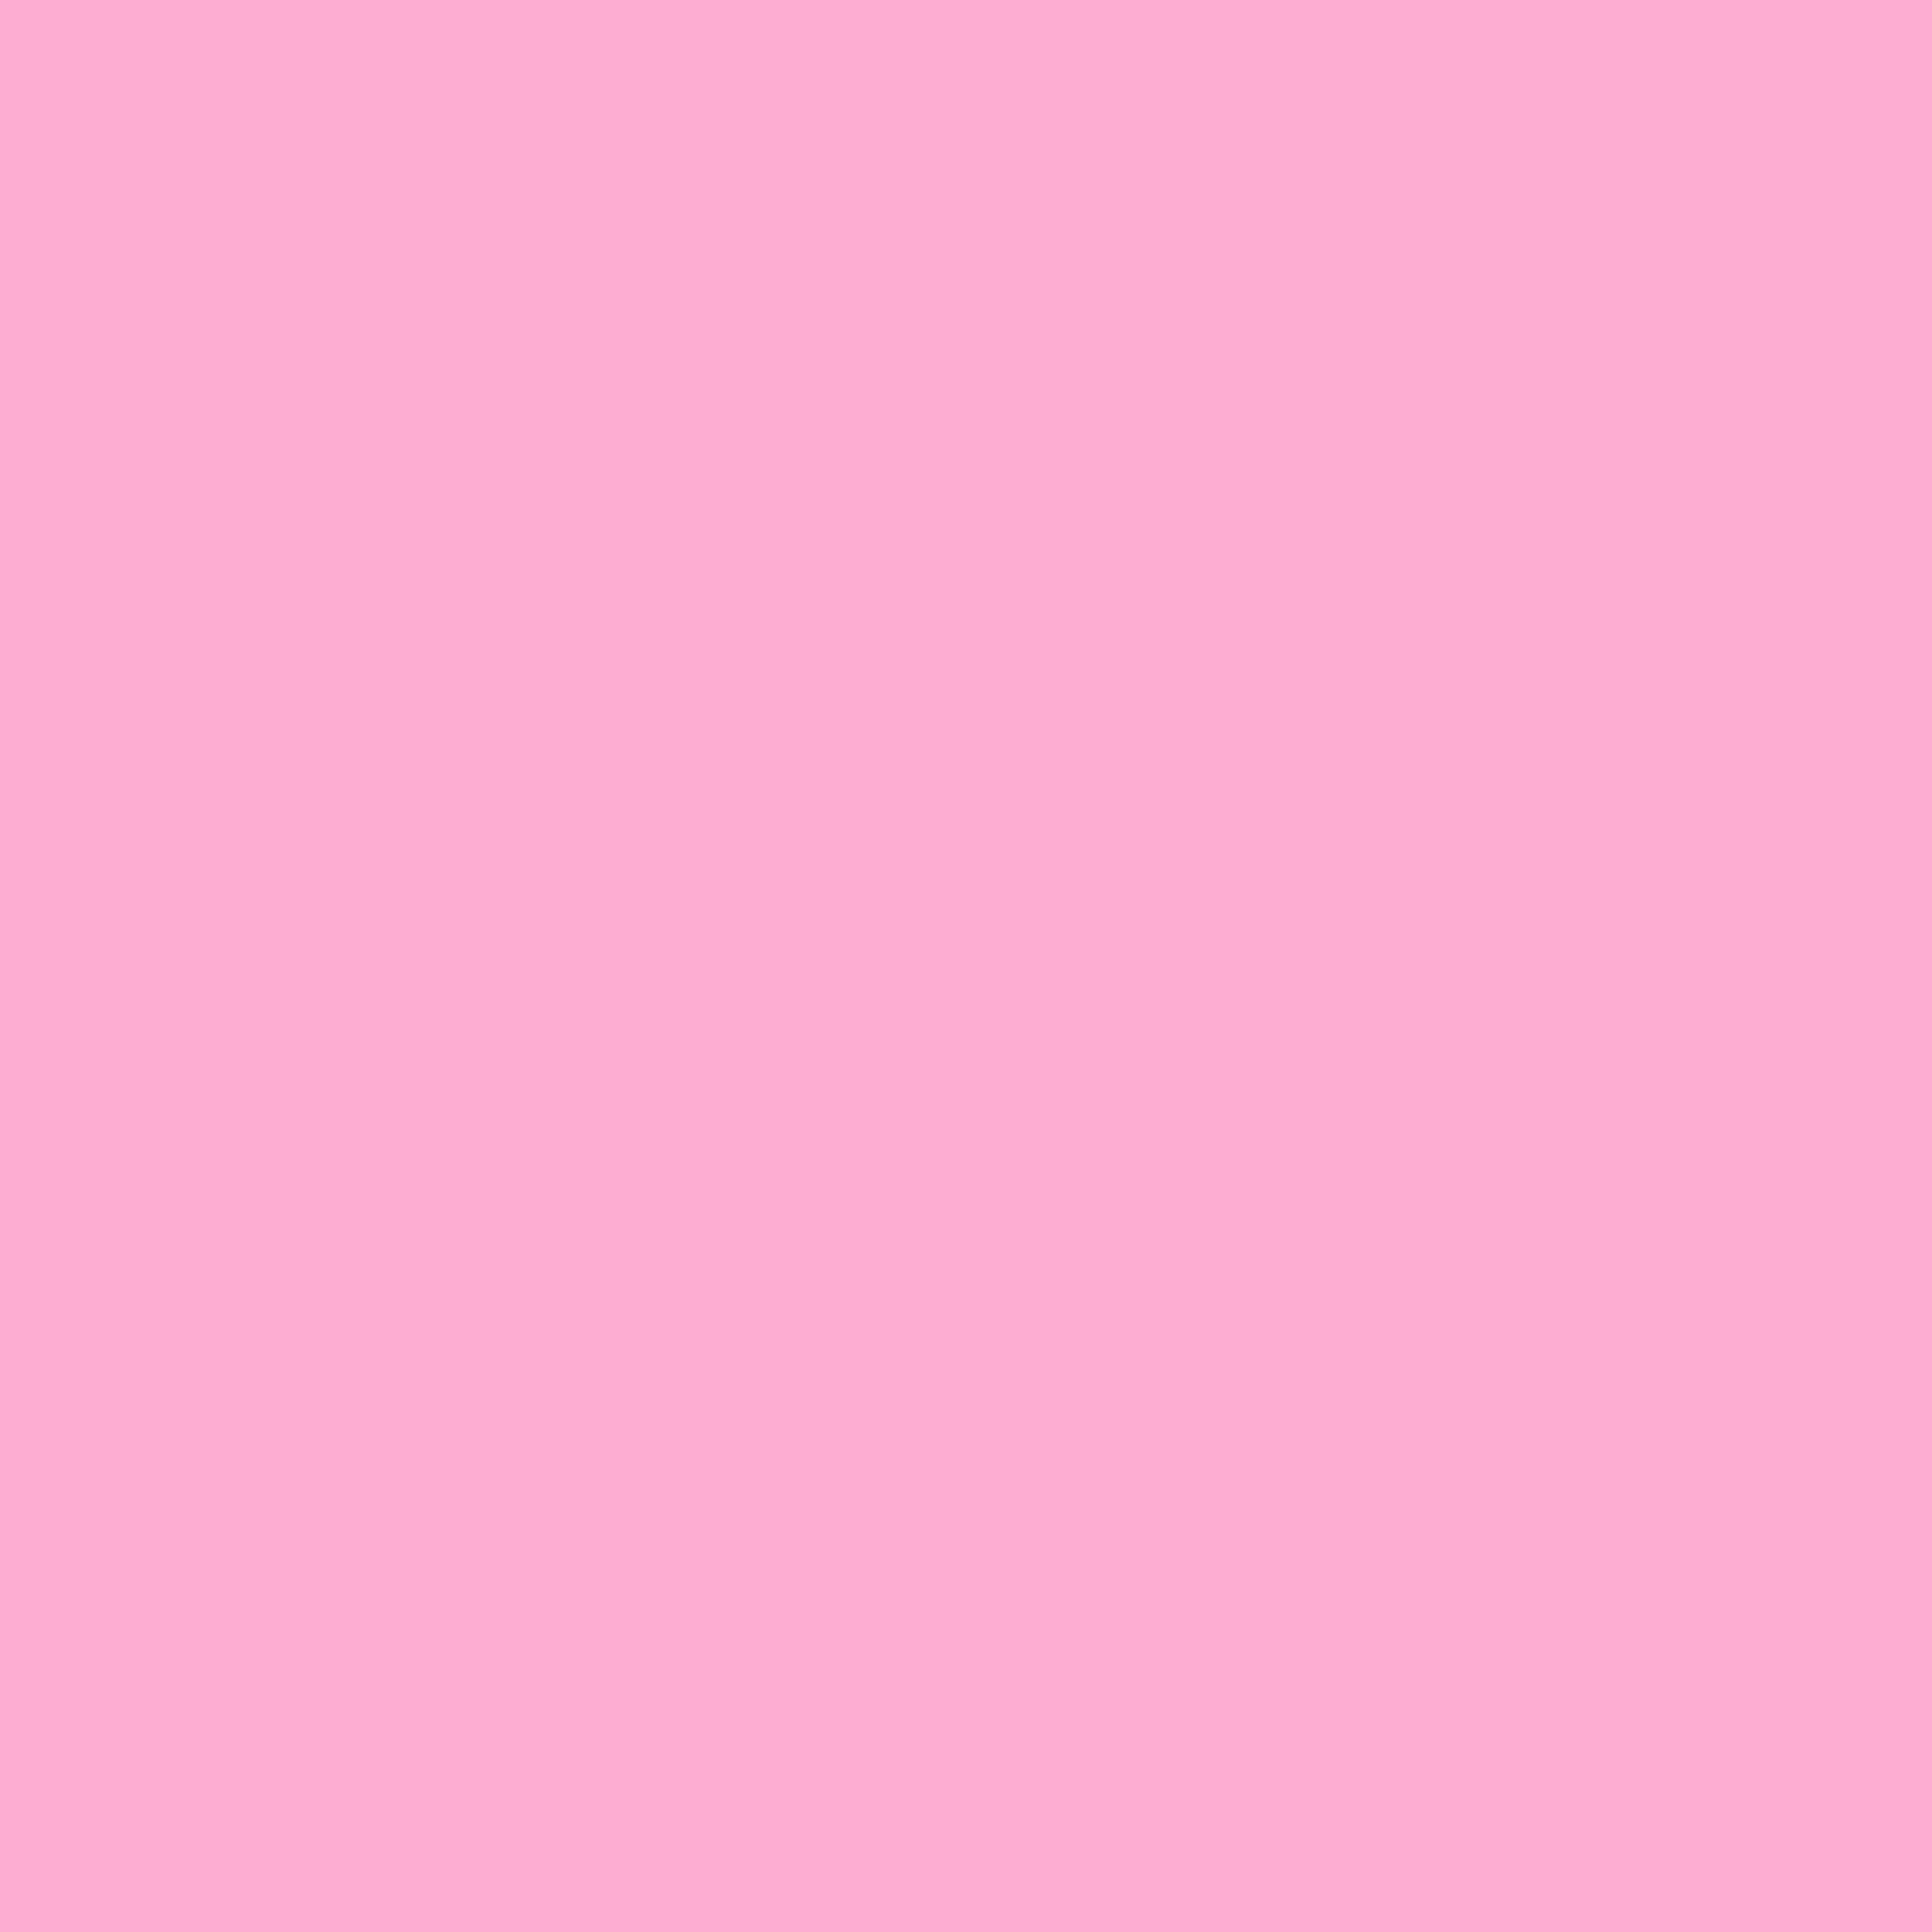 3600x3600 Lavender Pink Solid Color Background